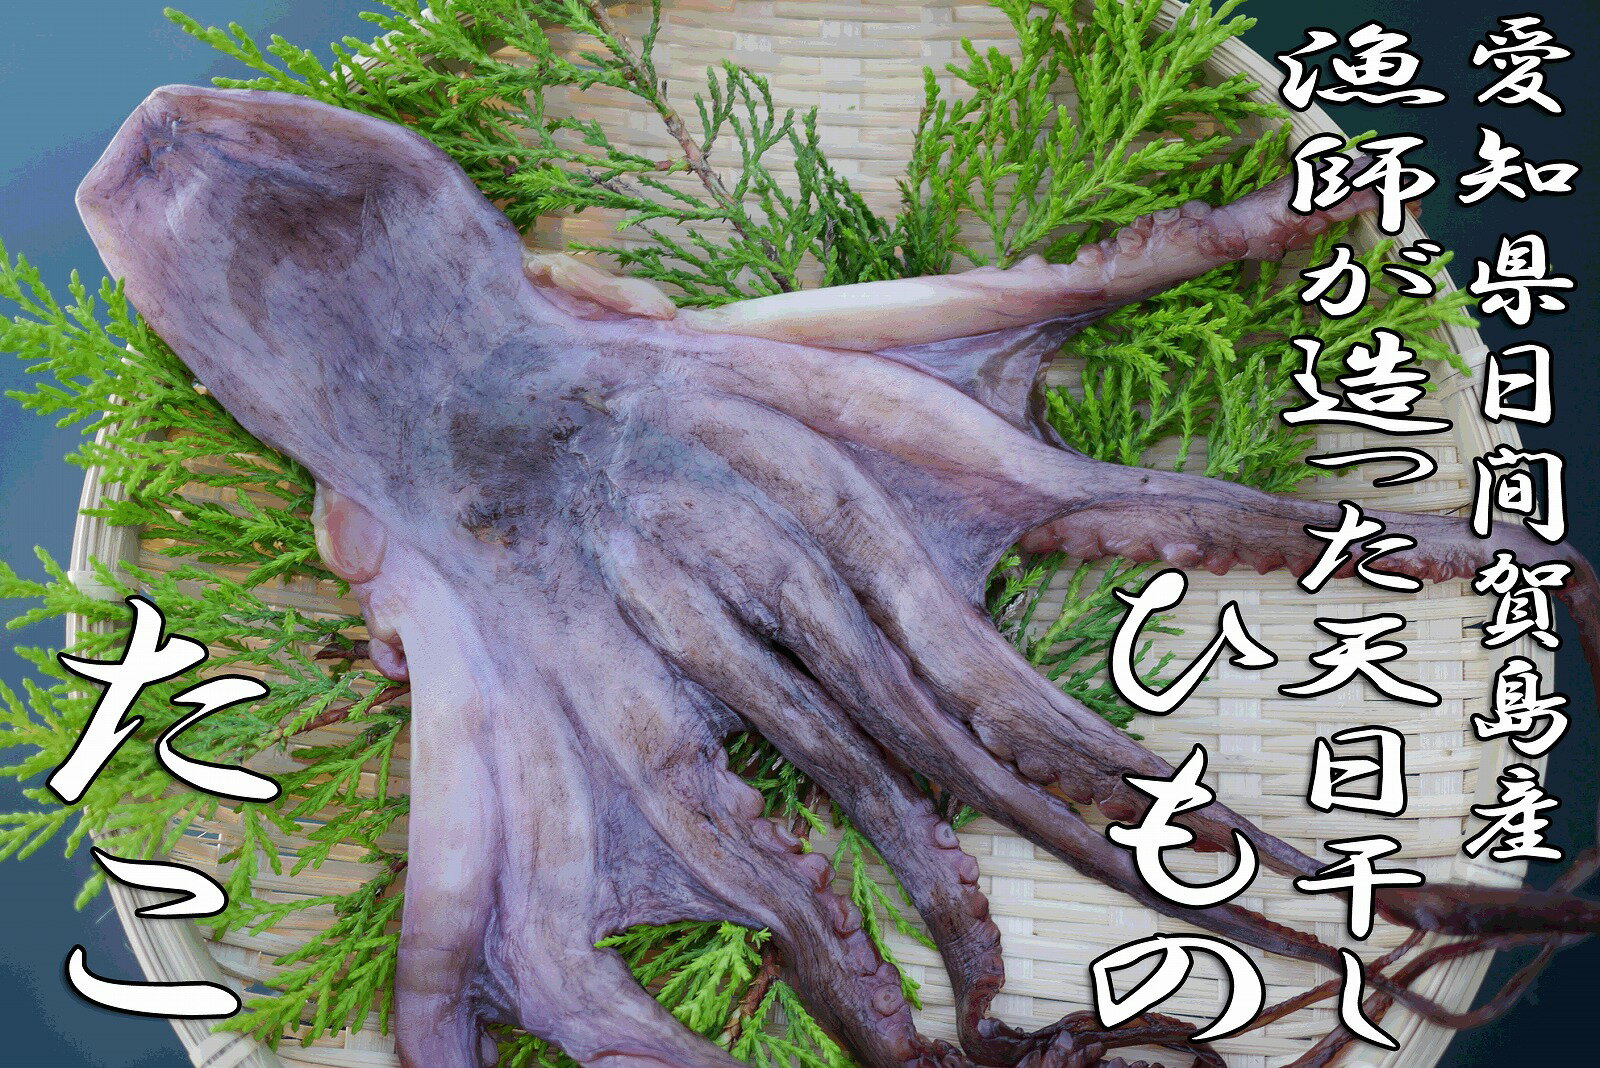 日間賀島漁師の手造り!天日干しタコの干物【蛸(たこ)のひもの】たこ飯にも…【SBZcou1208】